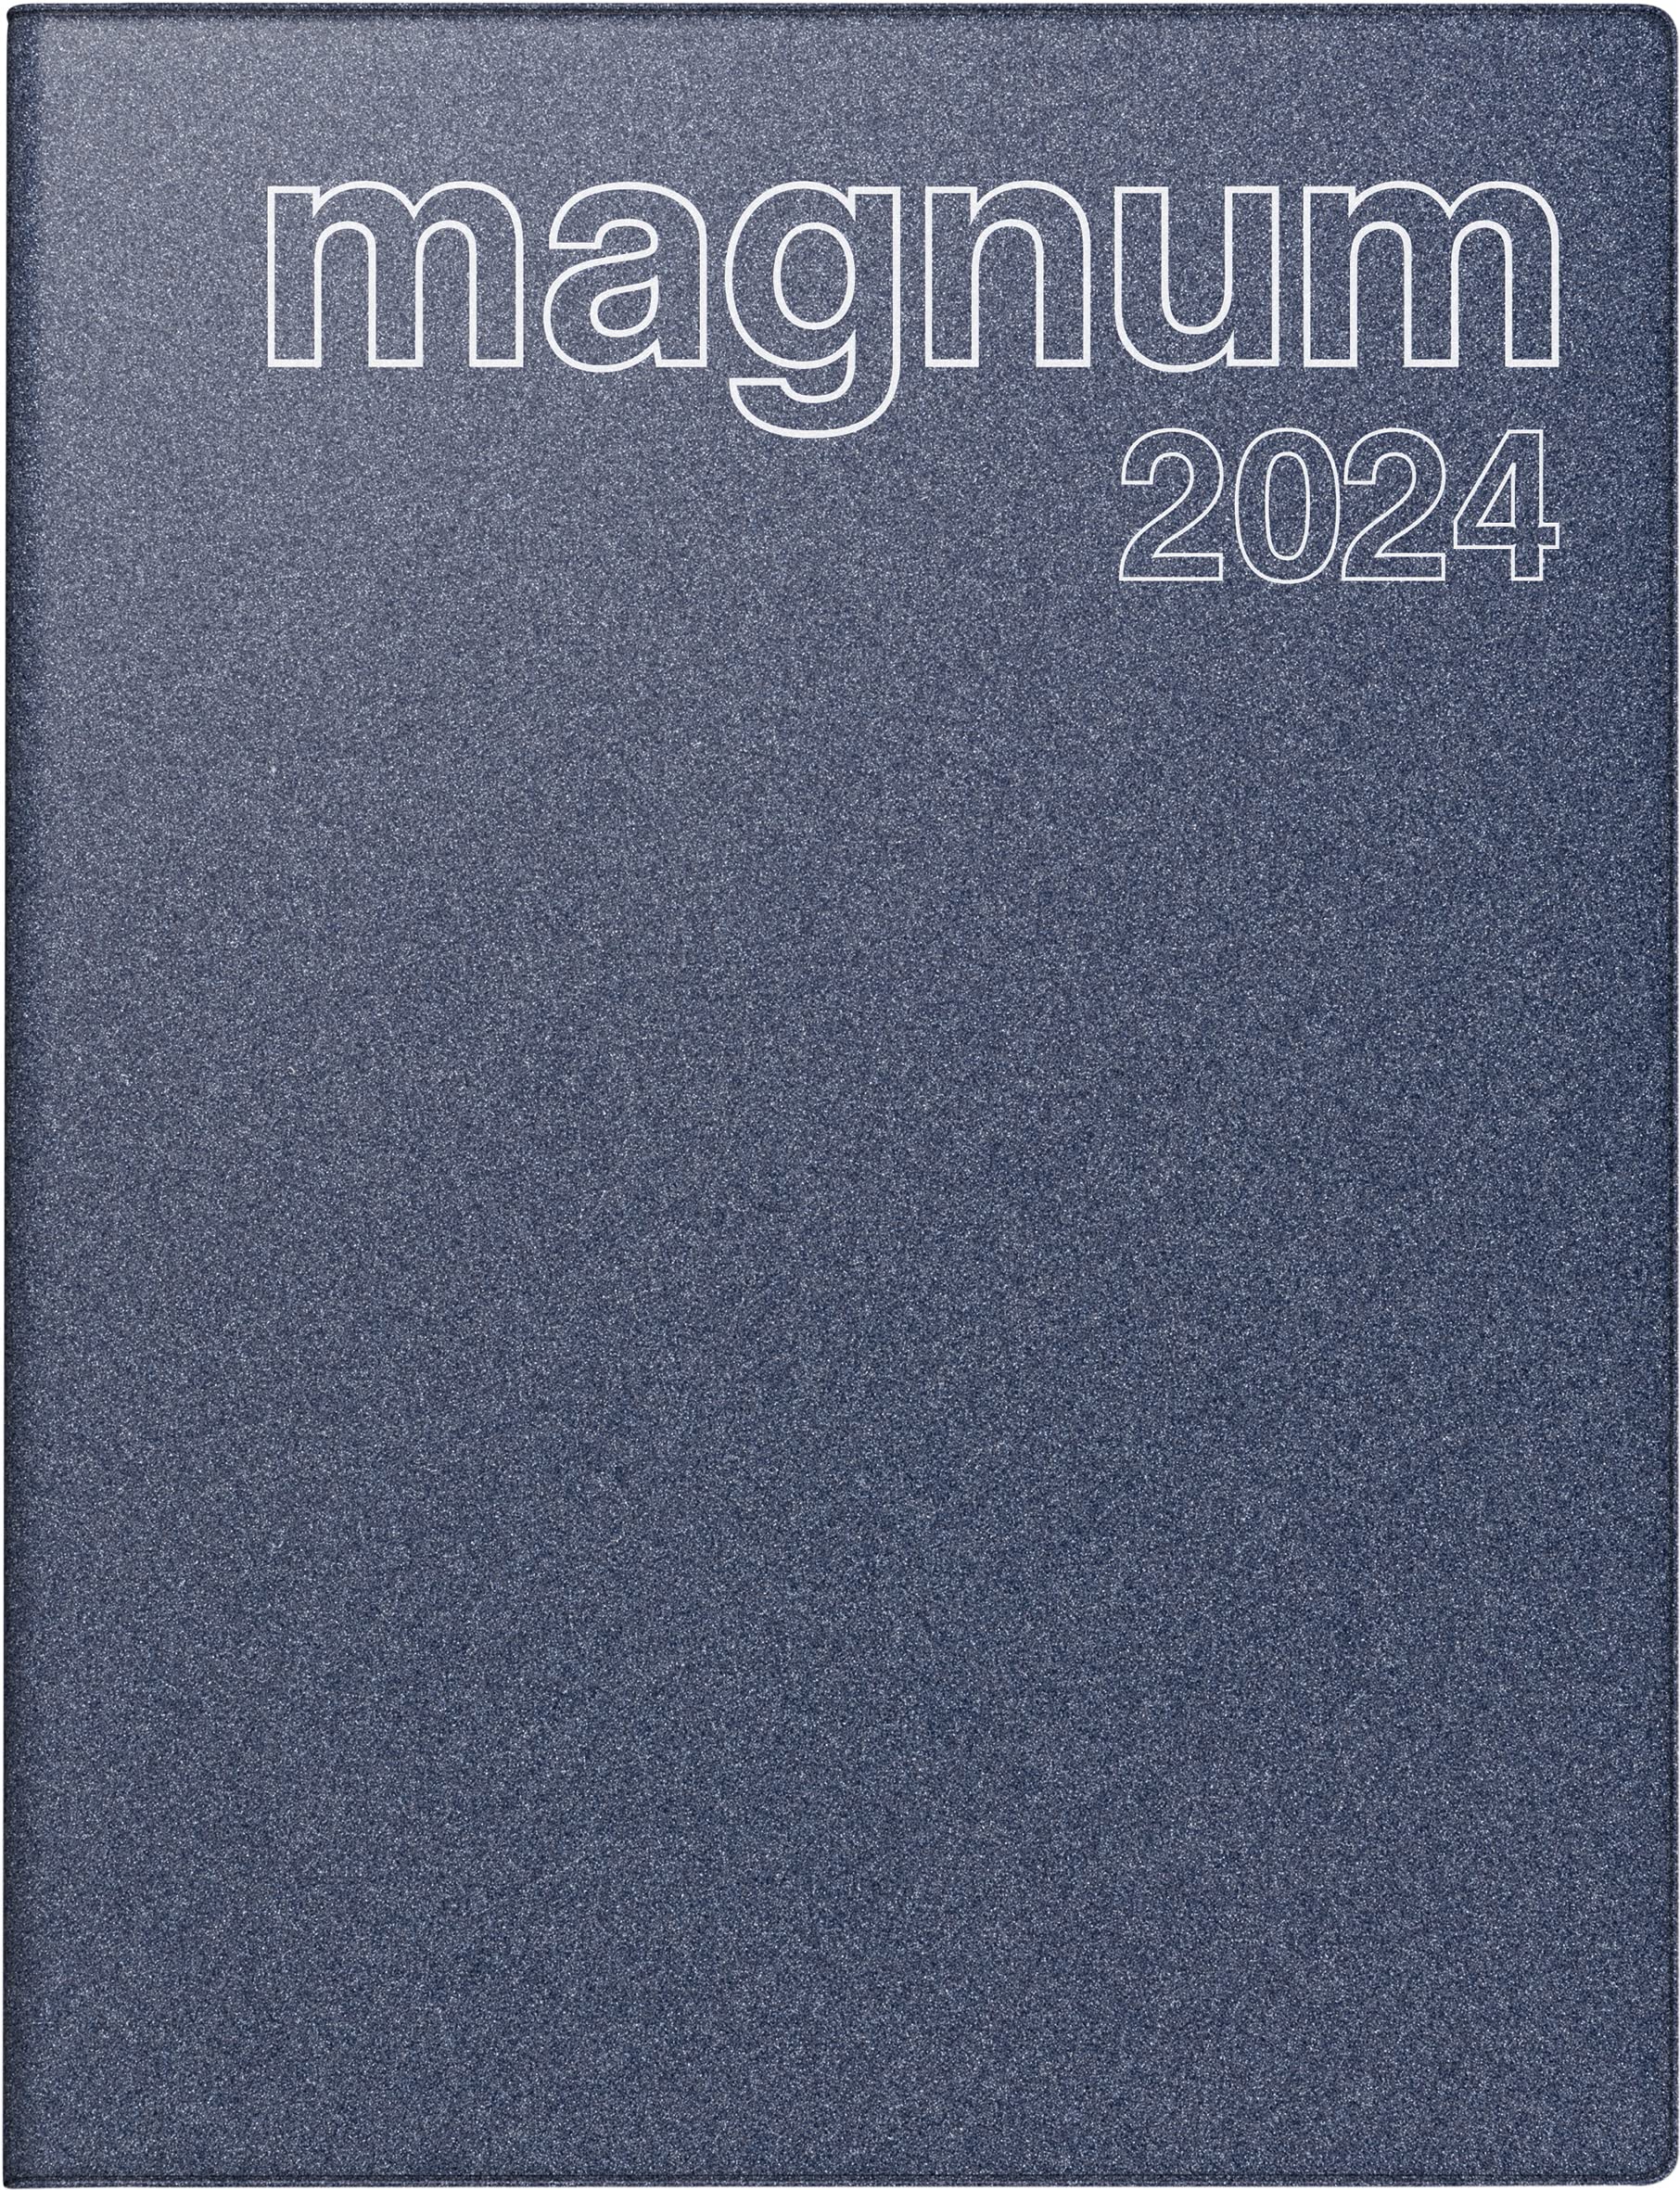 rido/idé Wochenkalender Modell magnum 2024 2 Seiten = 1 Woche Blattgröße 18,3 x 24 cm blau